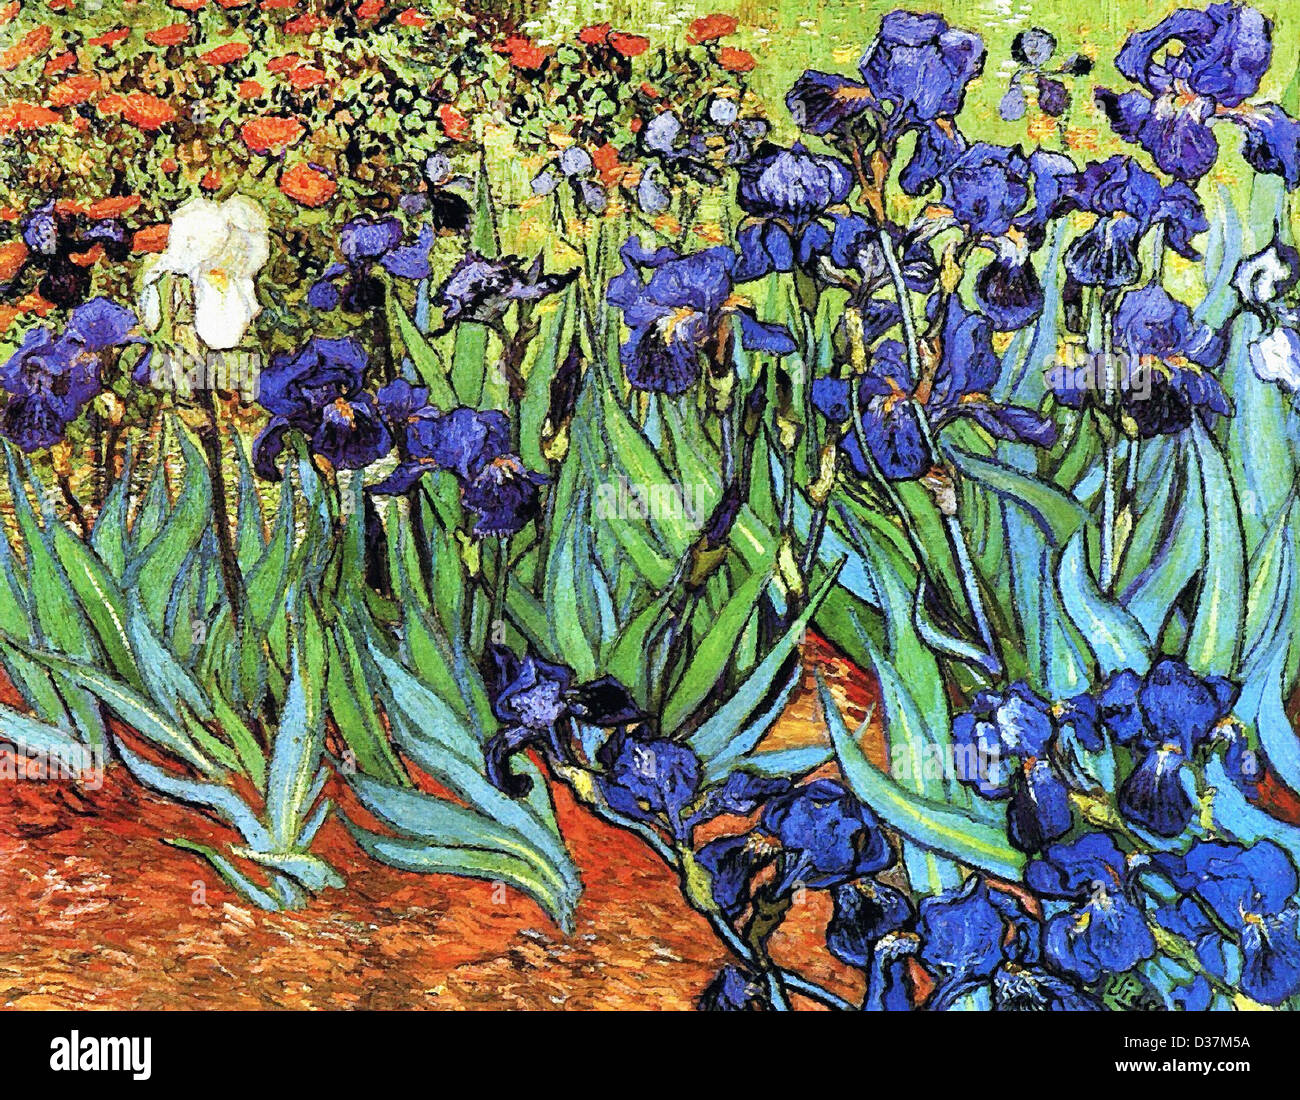 Vincent van Gogh, Iris. 1889. Posimpresionismo. Óleo sobre lienzo. Getty Museum, Los Angeles, California, Estados Unidos. Foto de stock